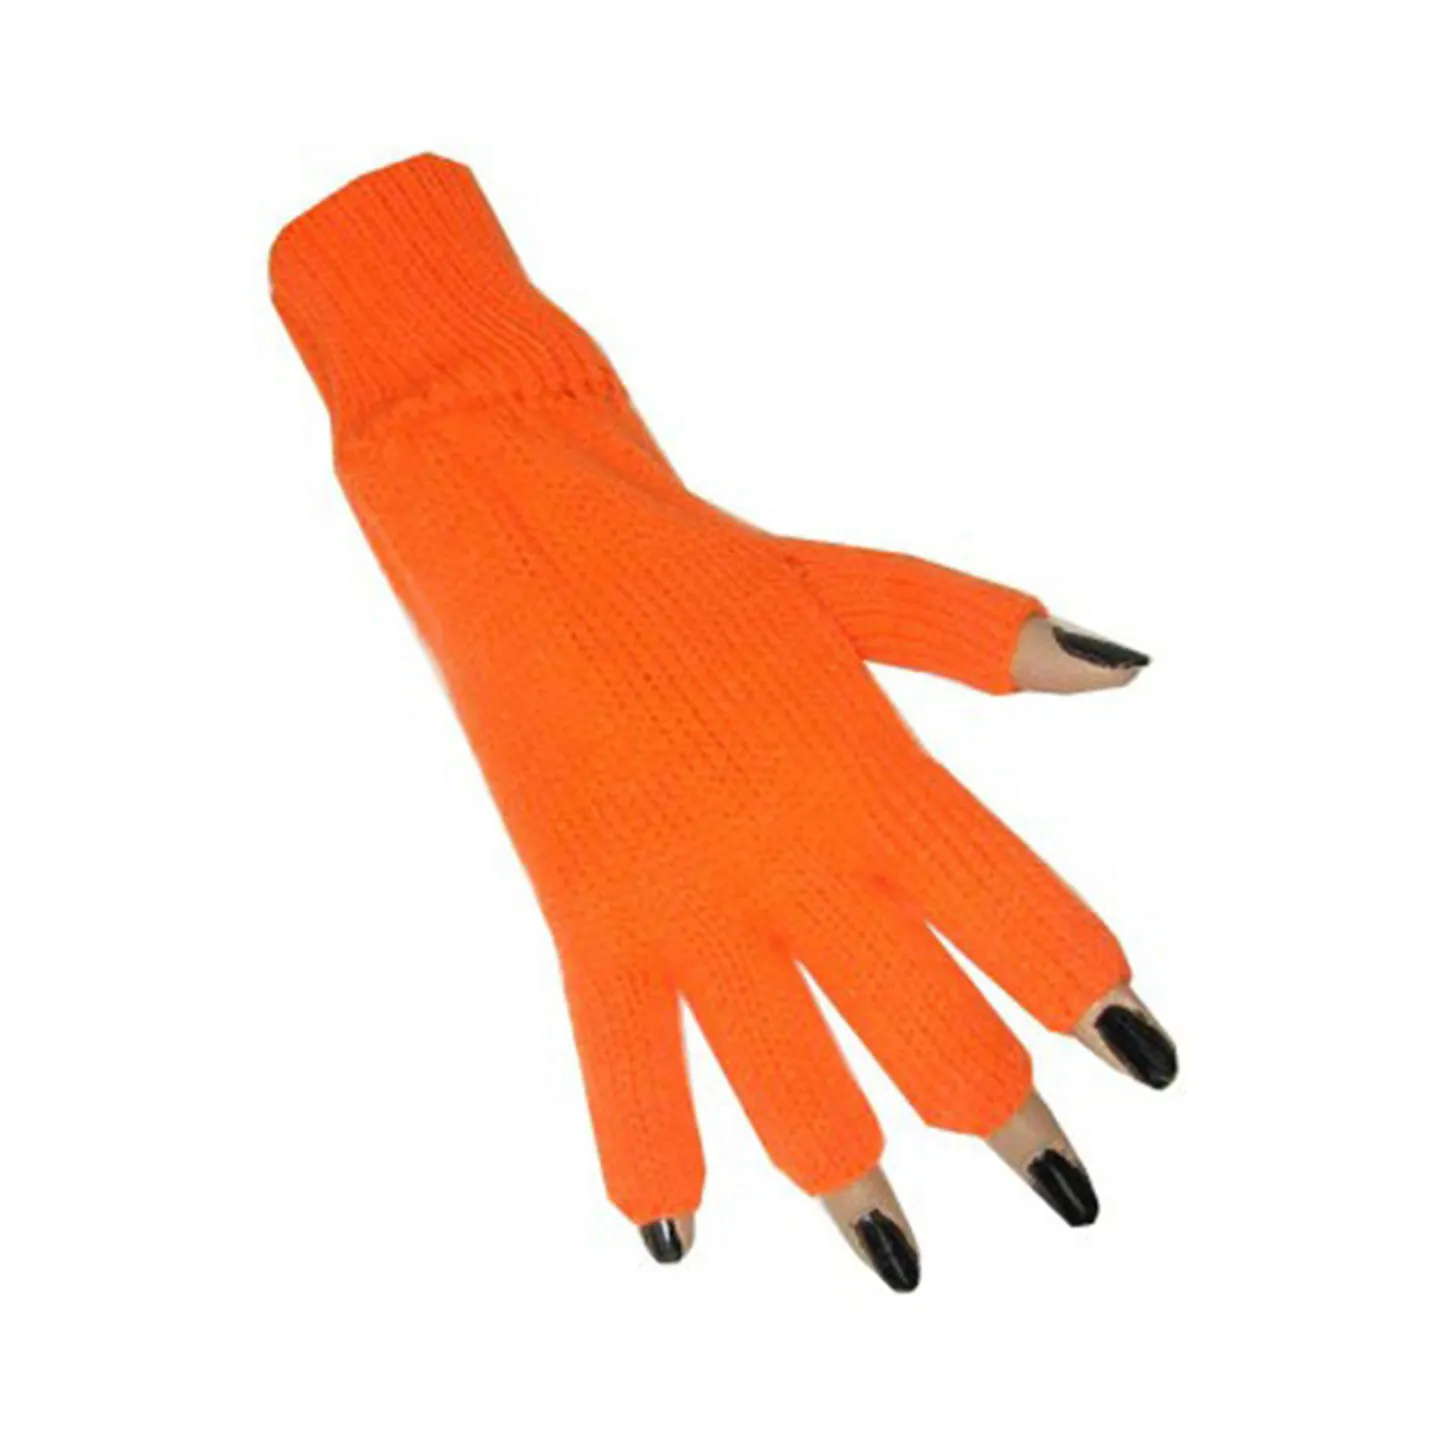 Handschoenen oranje kopen.